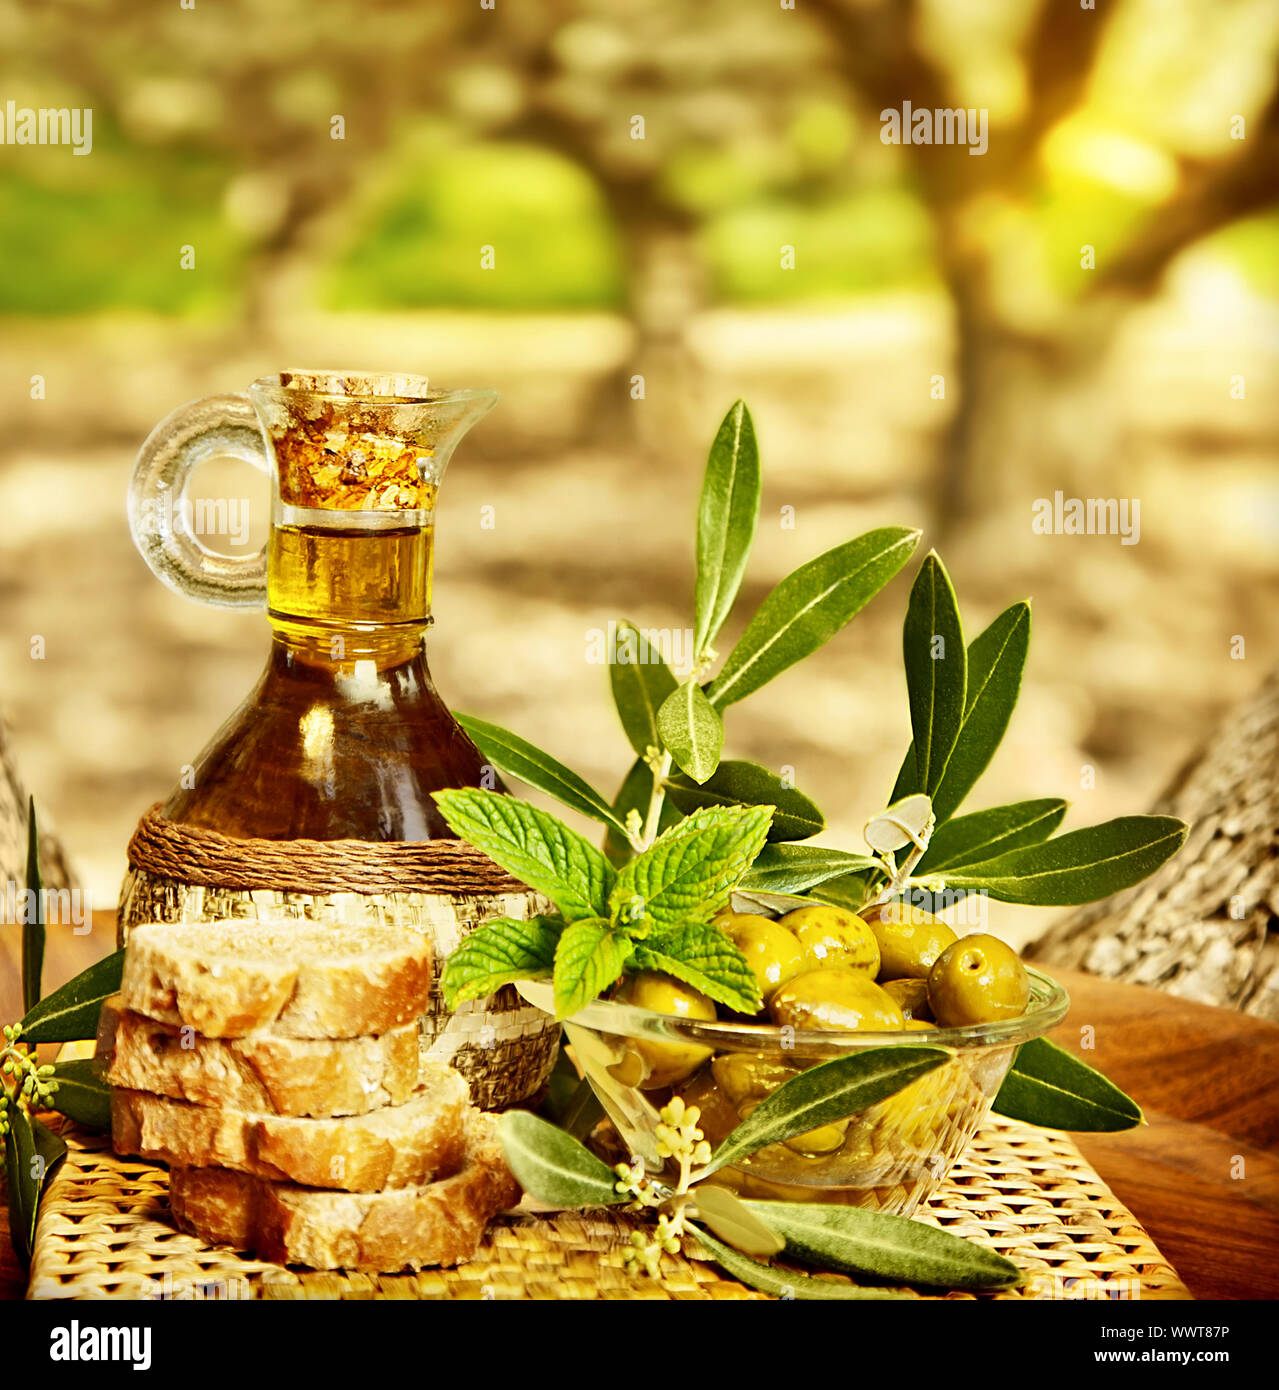 La vie encore Olives, aliments frais dans jardin d'oliviers, terrain agricole à campagne du Liban, de bonne santé l'huile d'olive et du pain, le temps de la récolte Banque D'Images